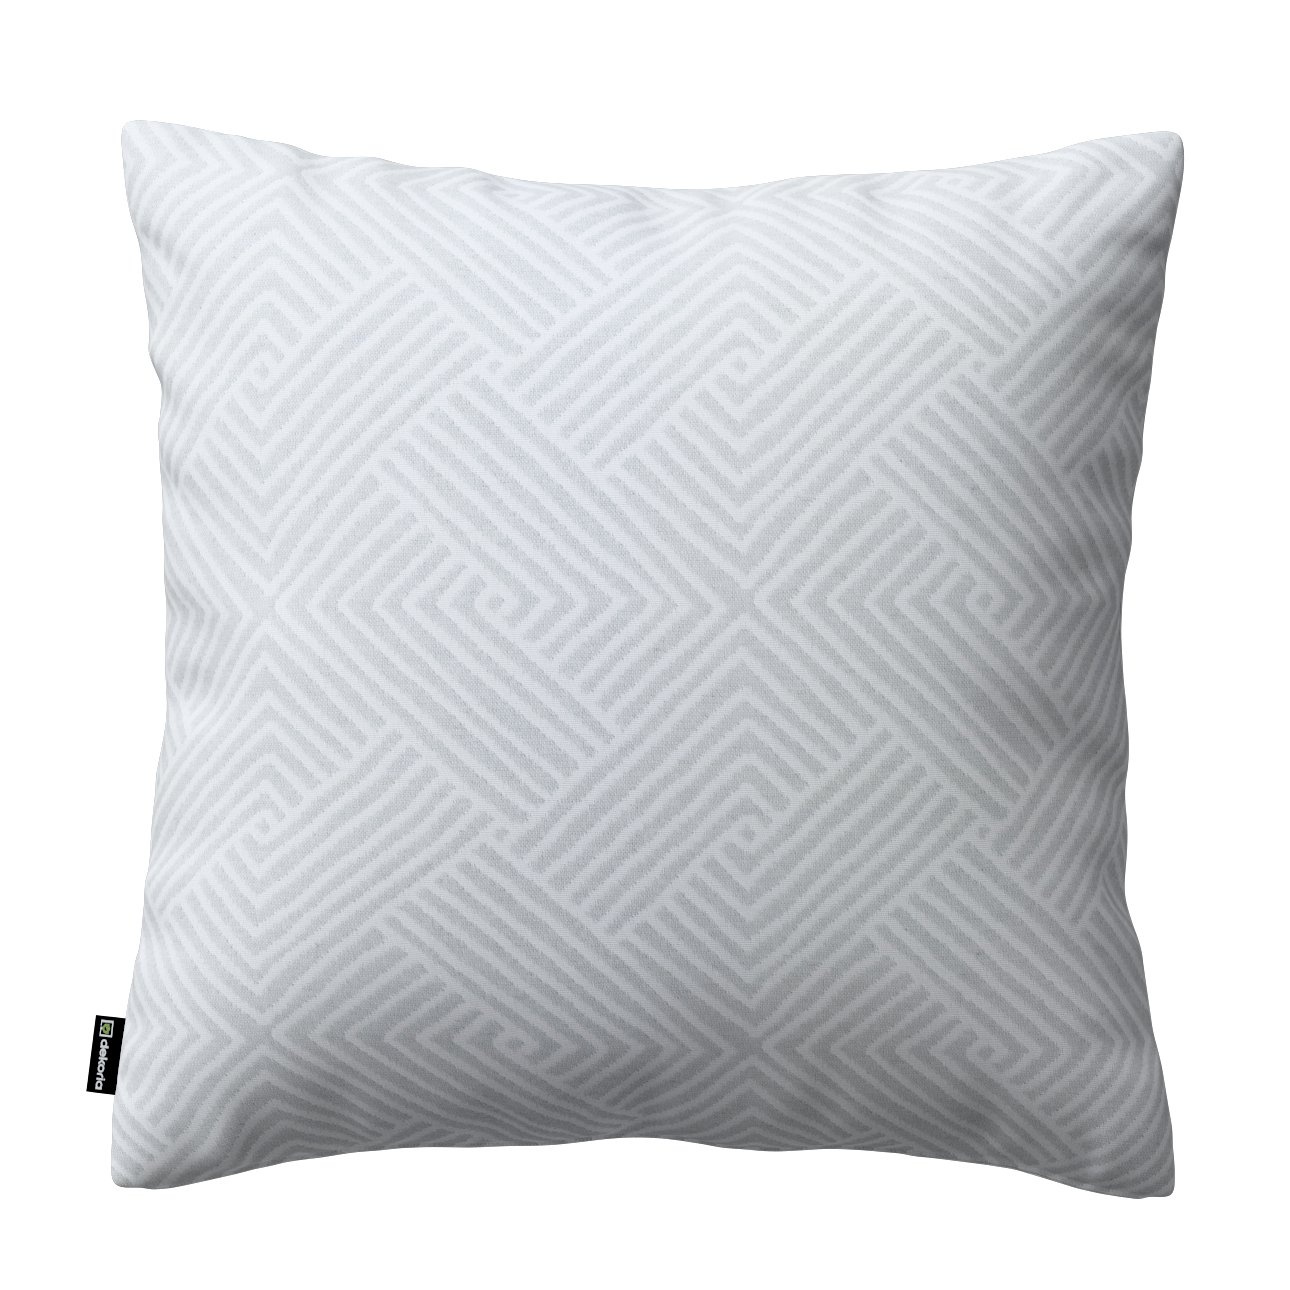 Dekoria Karin - jednoduchá obliečka, sivo-biele geometrické vzory, 60 x 60 cm, Sunny, 143-43